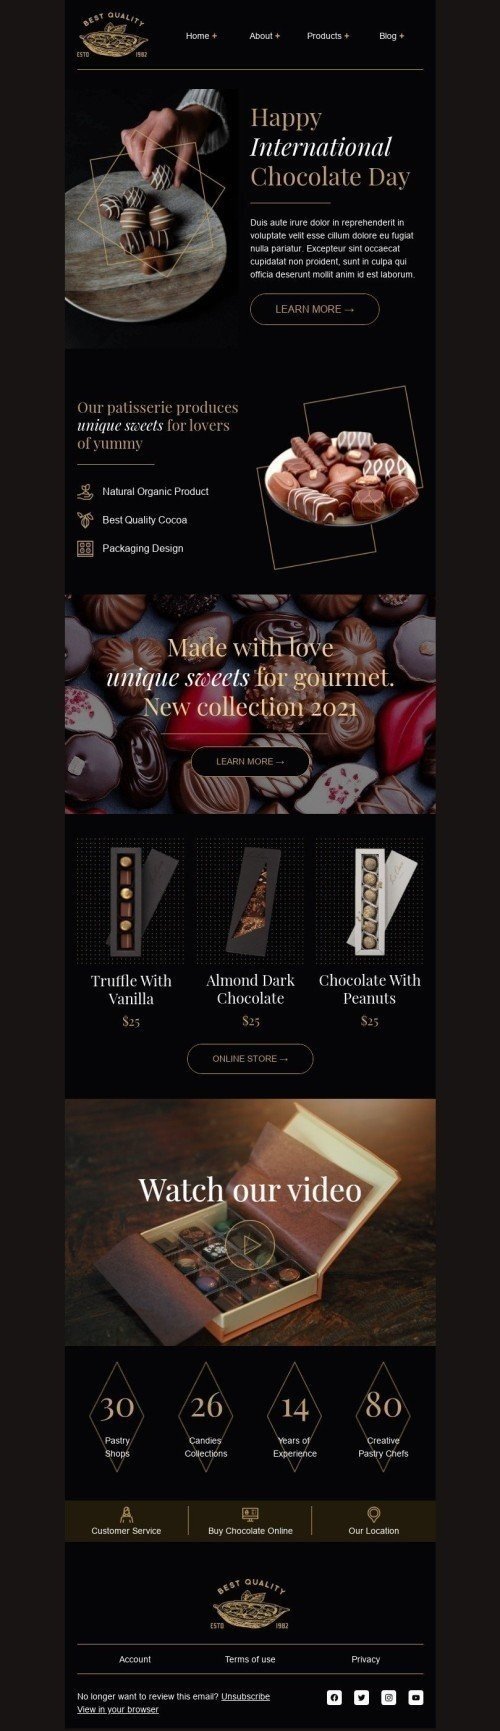 Plantilla de correo electrónico «Hecho con amor» de Día Internacional del Chocolate para la industria de Gastronomía Vista de escritorio